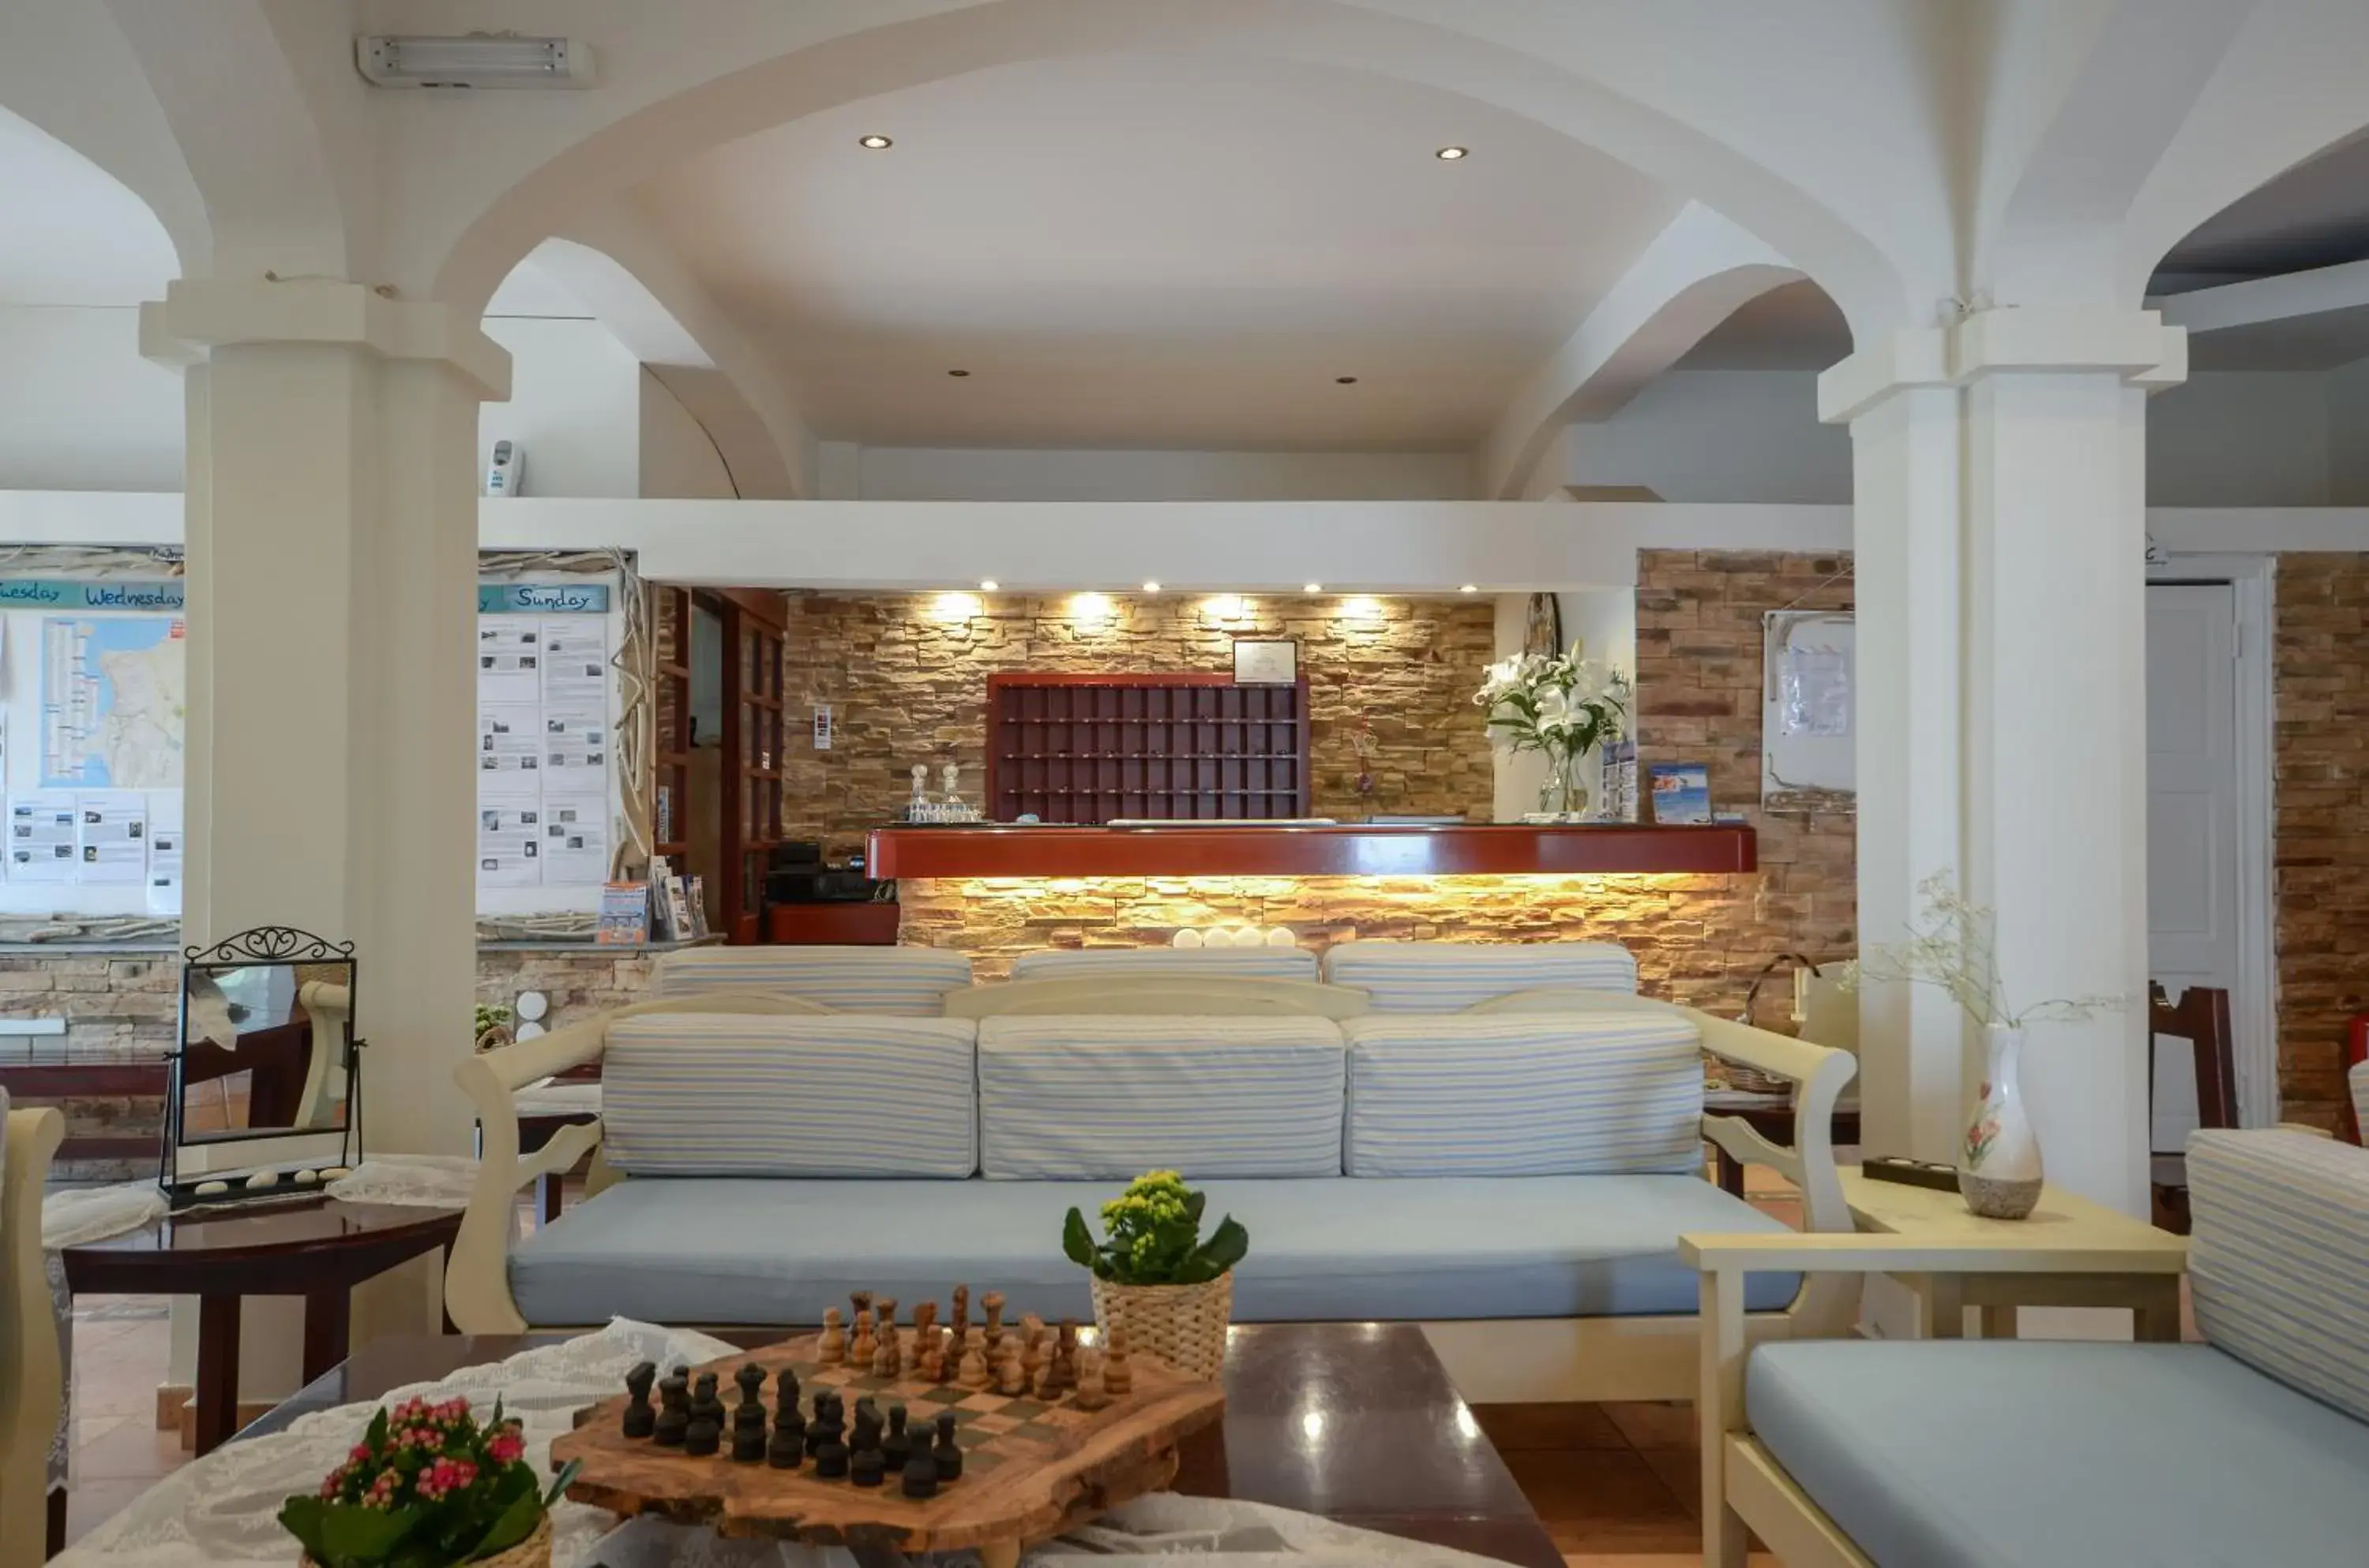 Lobby or reception in Naxos Beach Hotel